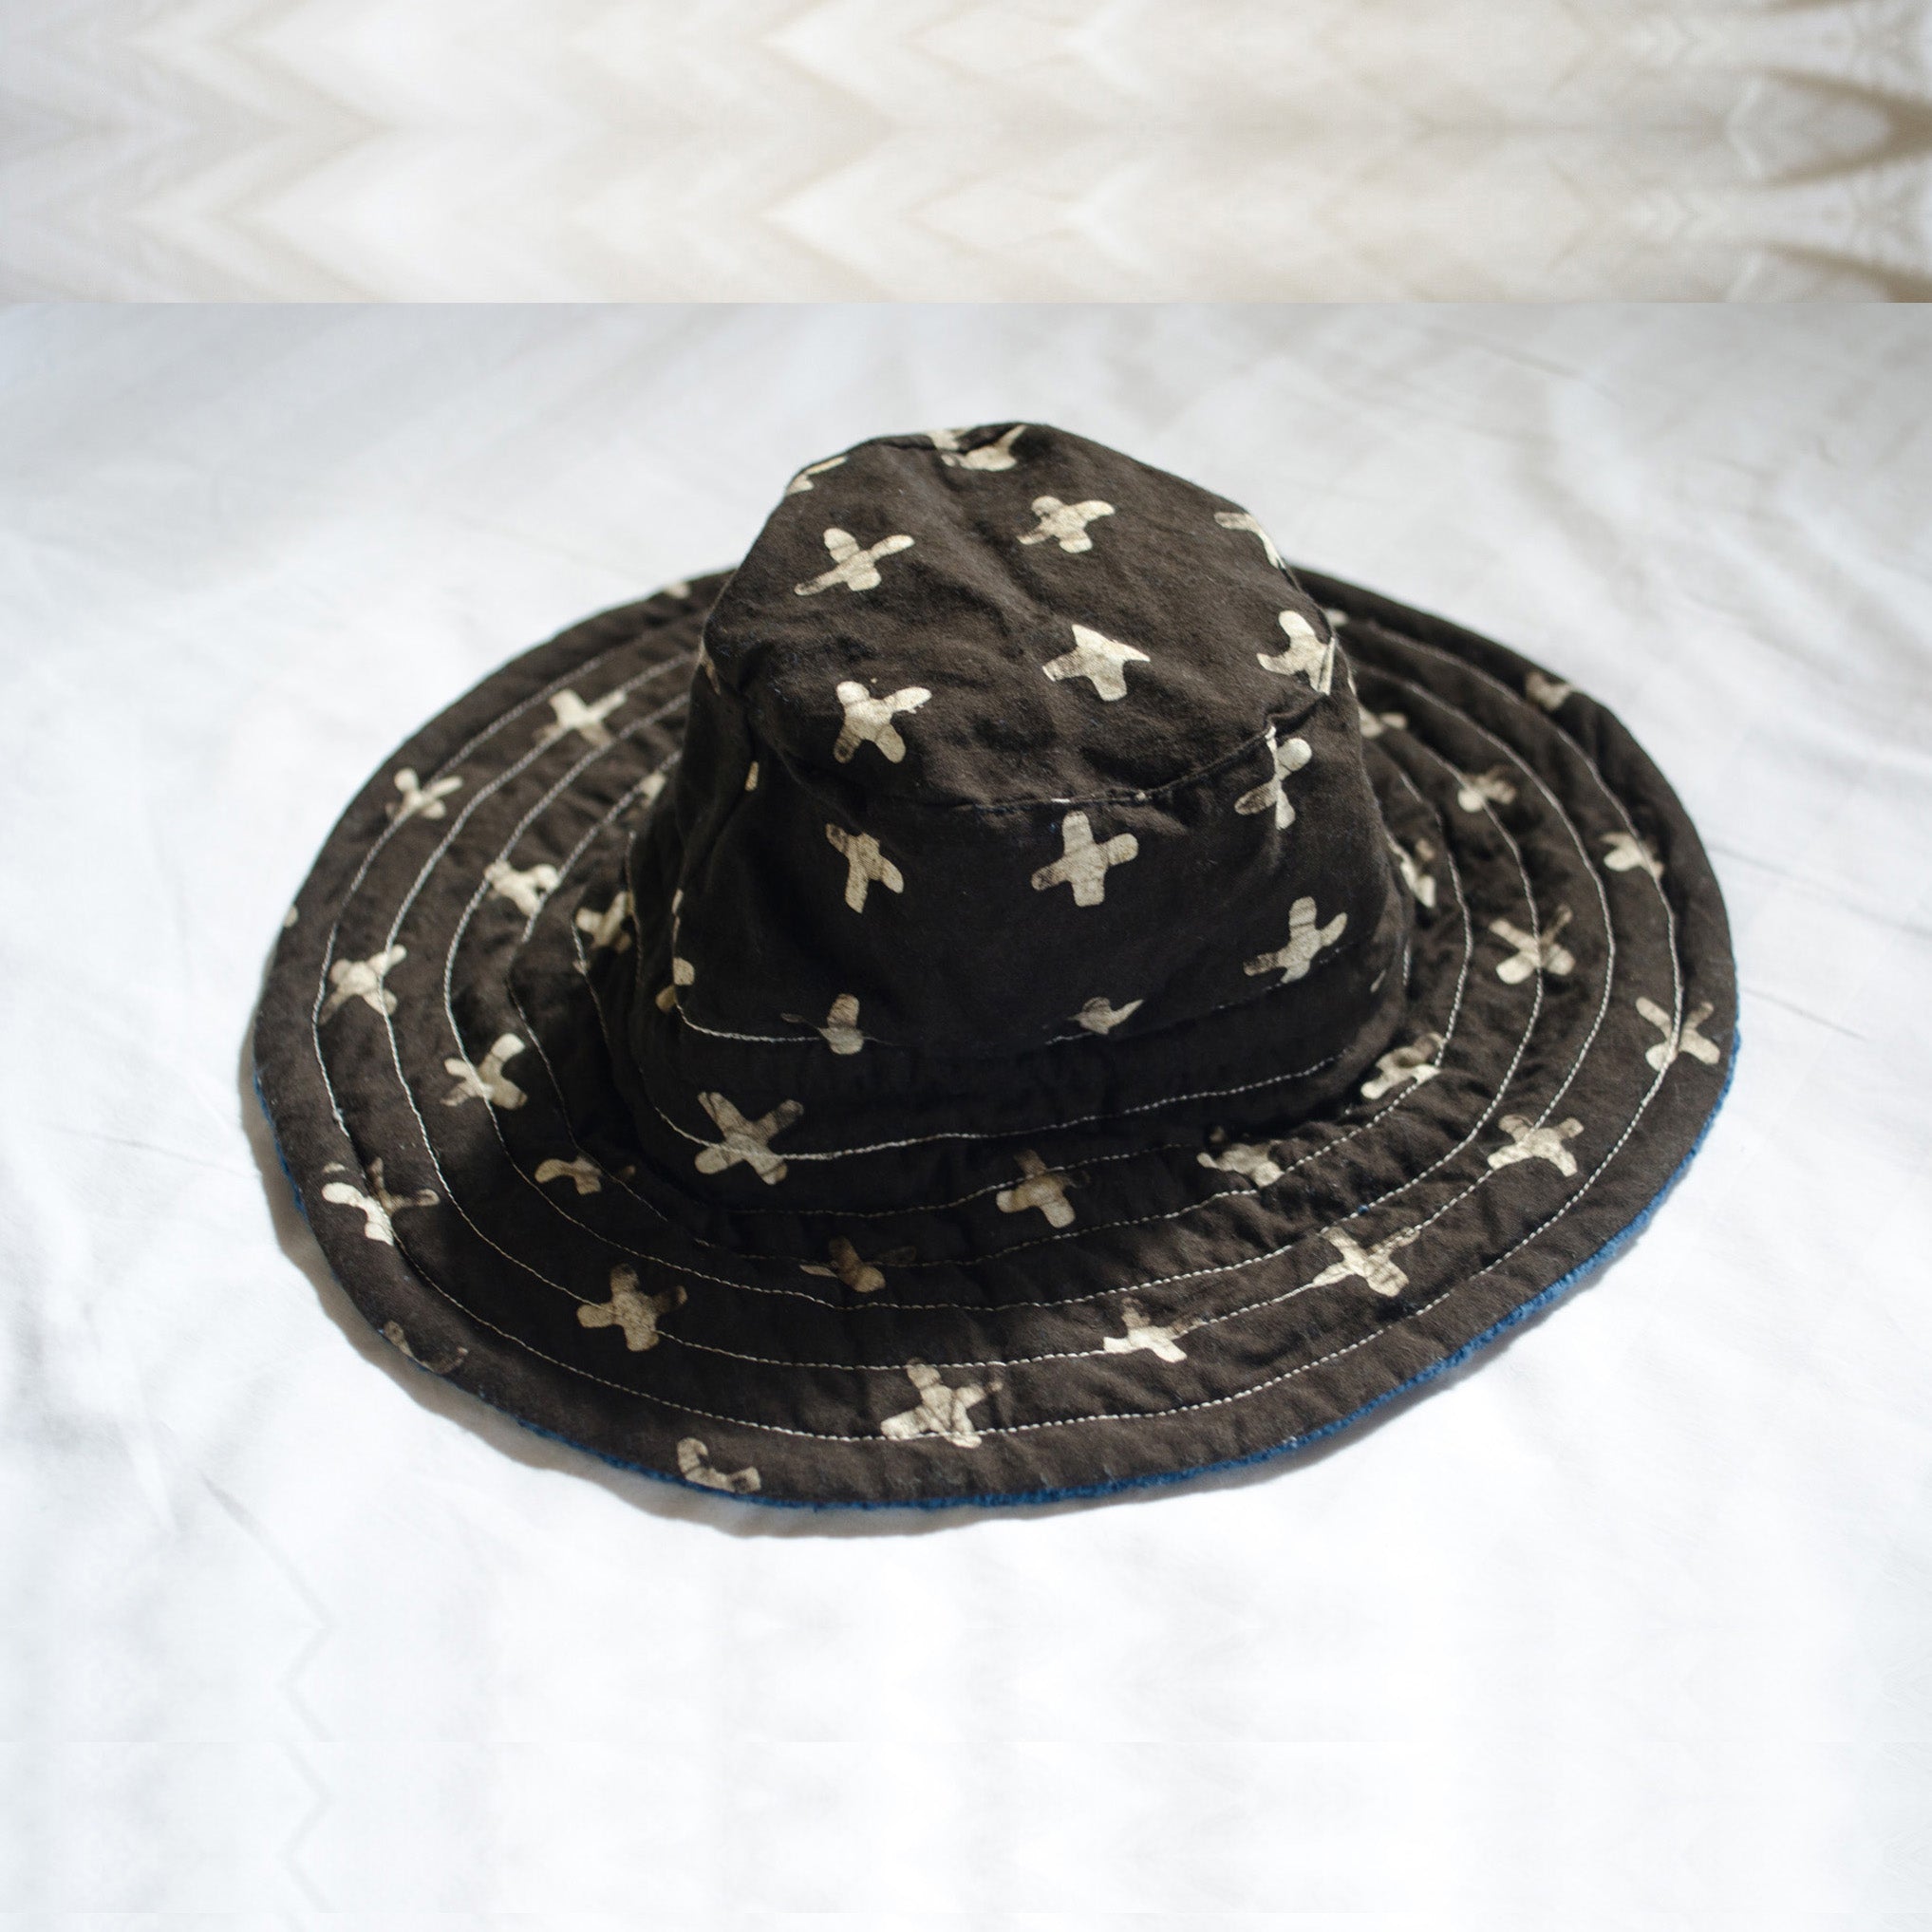 Indigo Ocean Safe Passage Bucket Hat